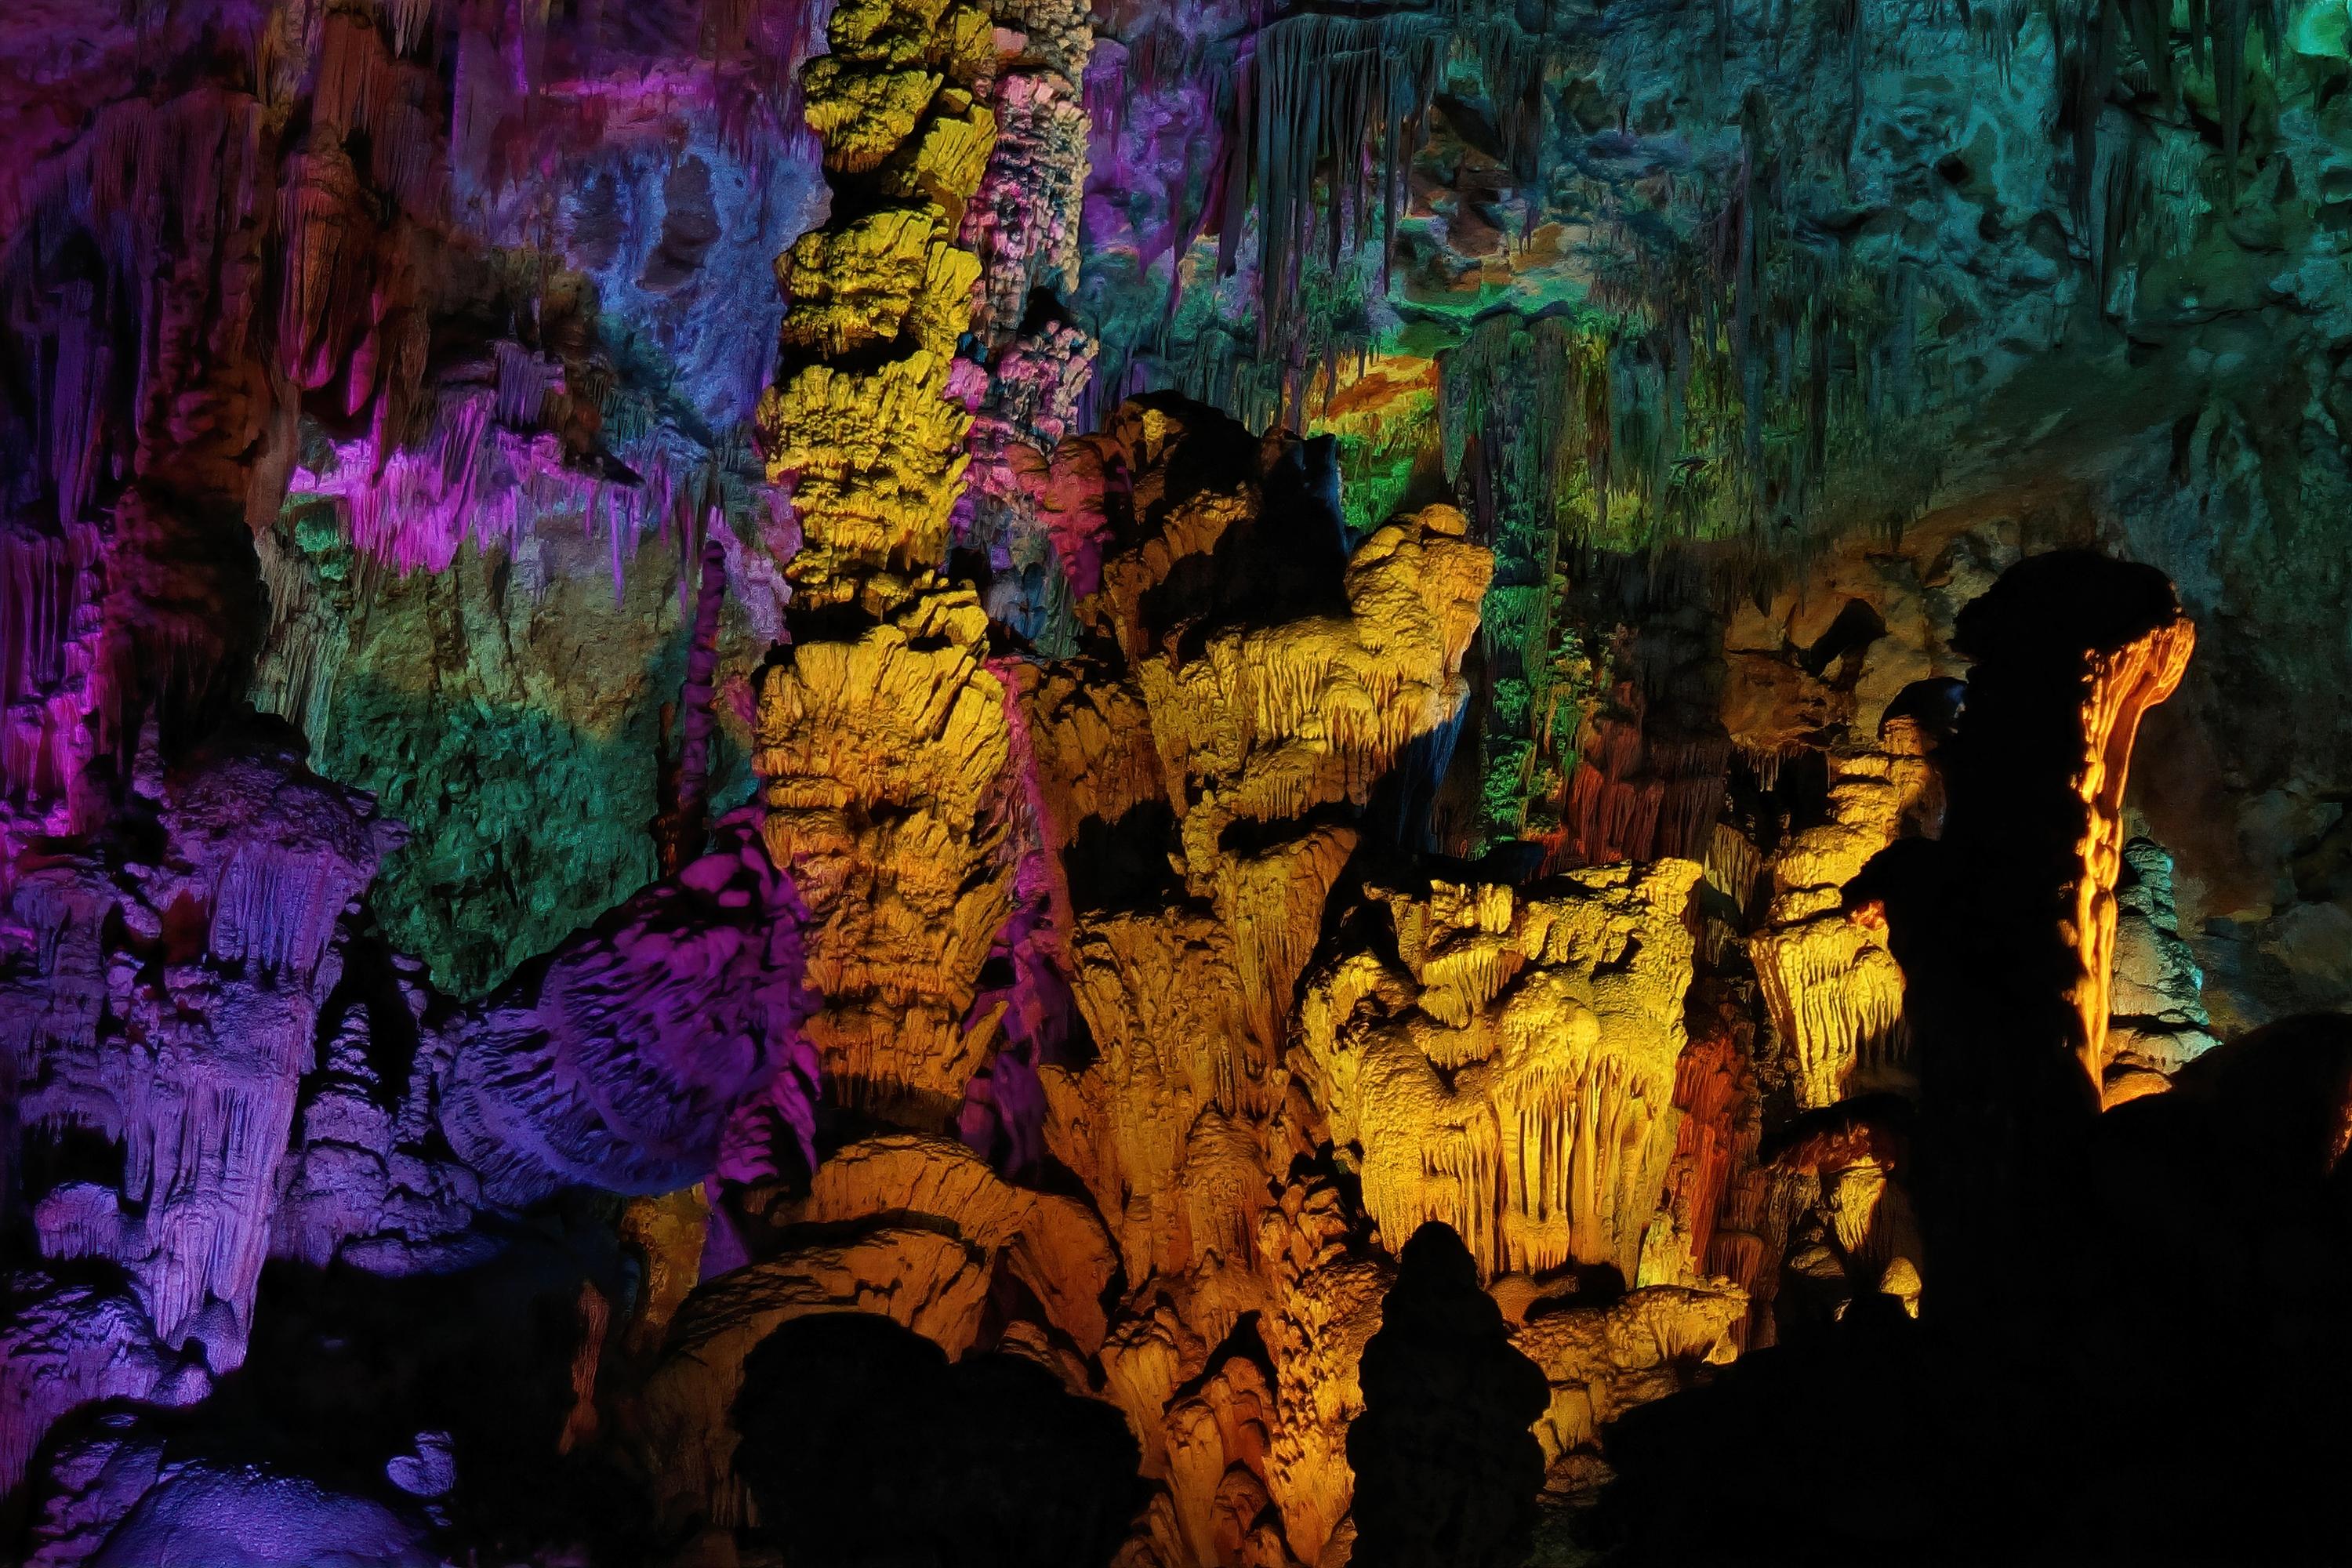 France - Grotte de la Salamandre